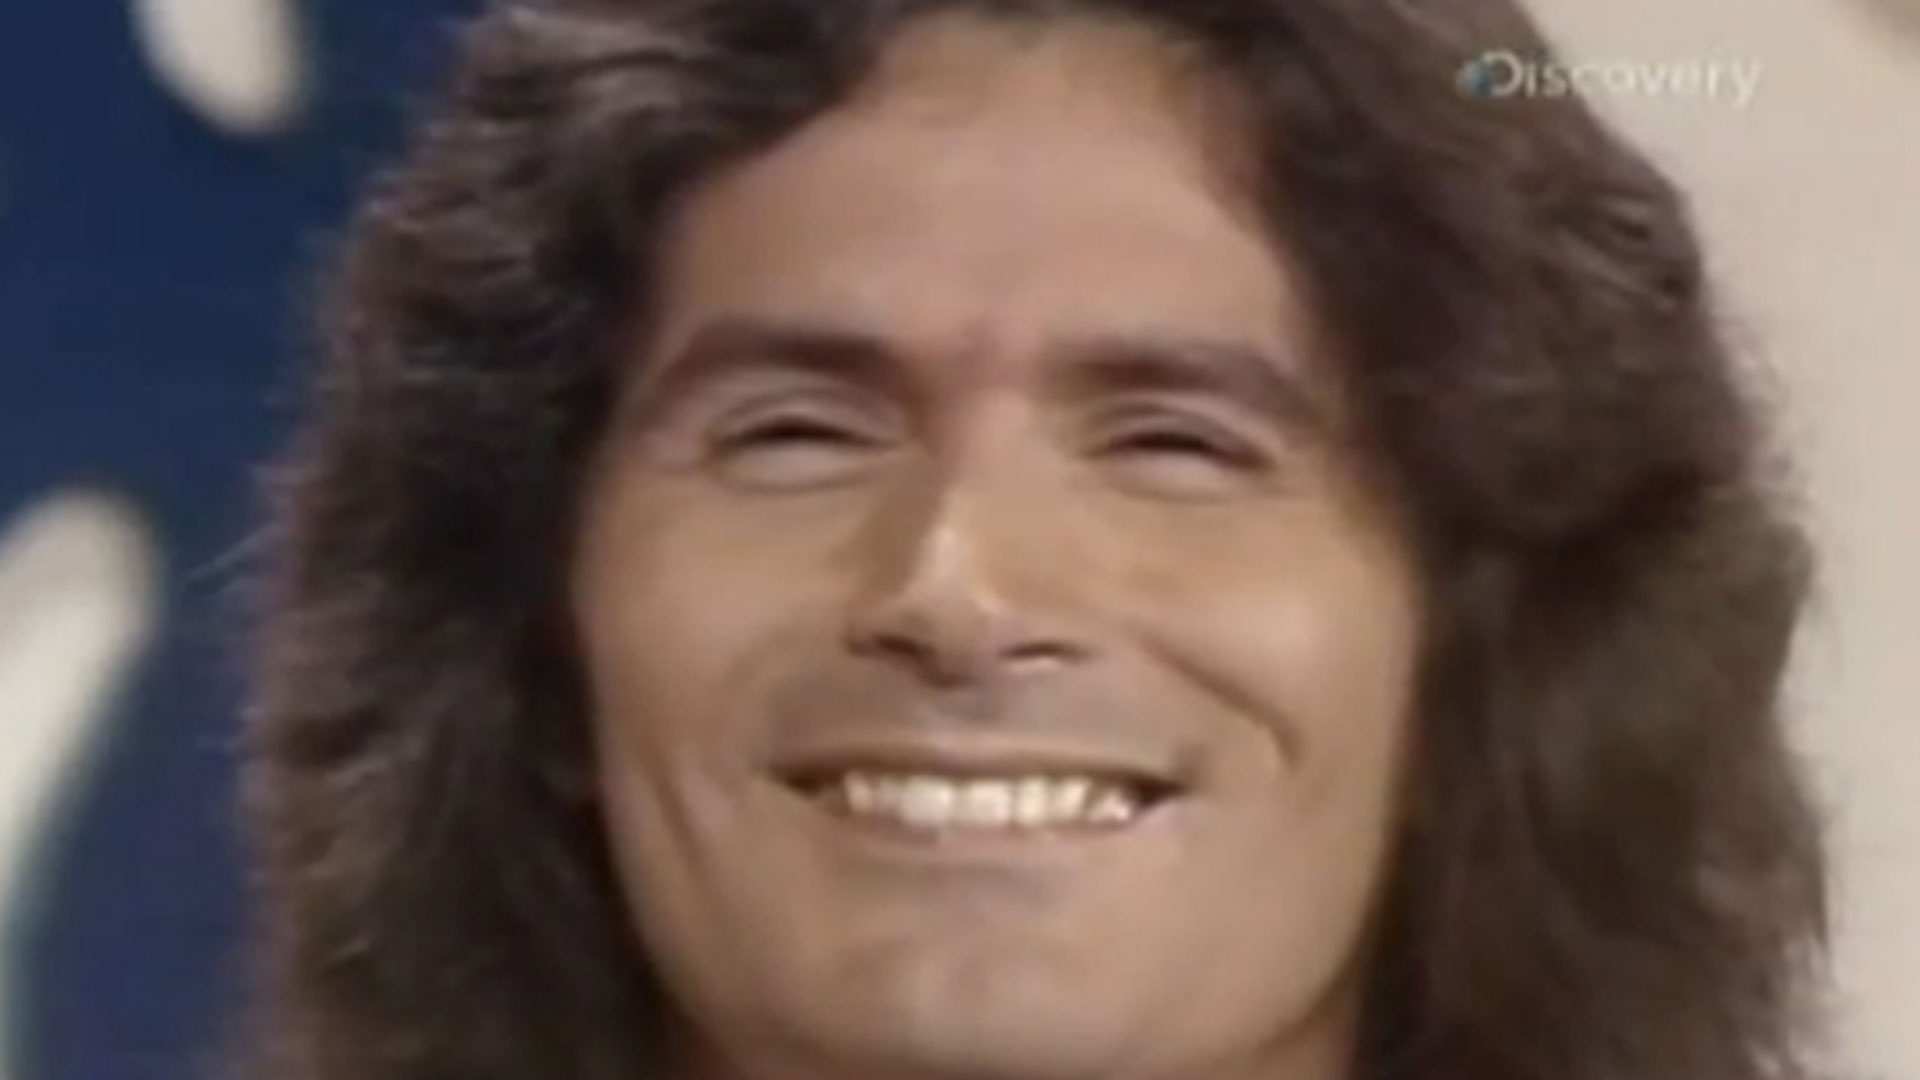 Alcalá en su participación en "The Dating Game", un popular programa de televisión en Estados Unidos en los años 70